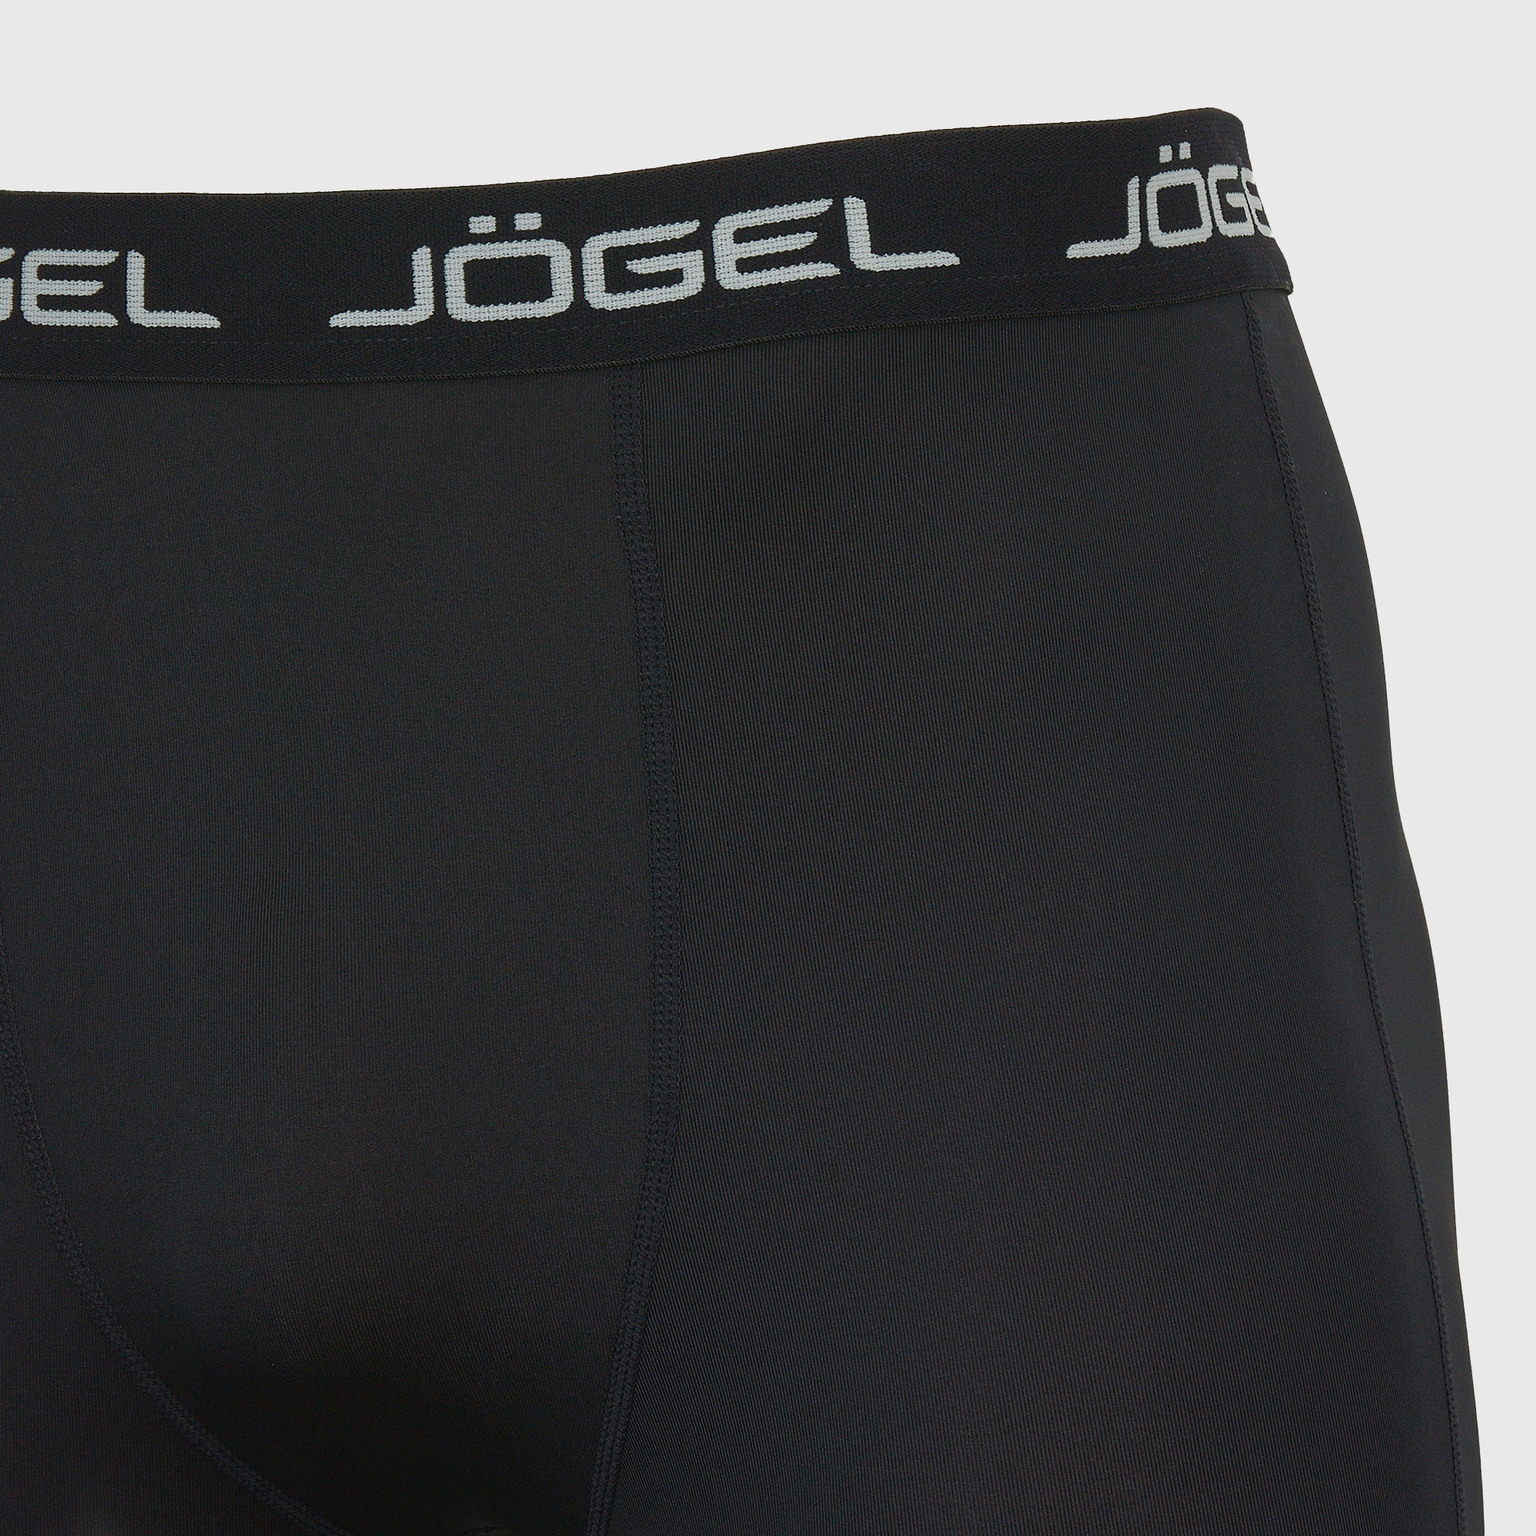 Белье шорты Jogel Camp Performdry Tight УТ-00016267